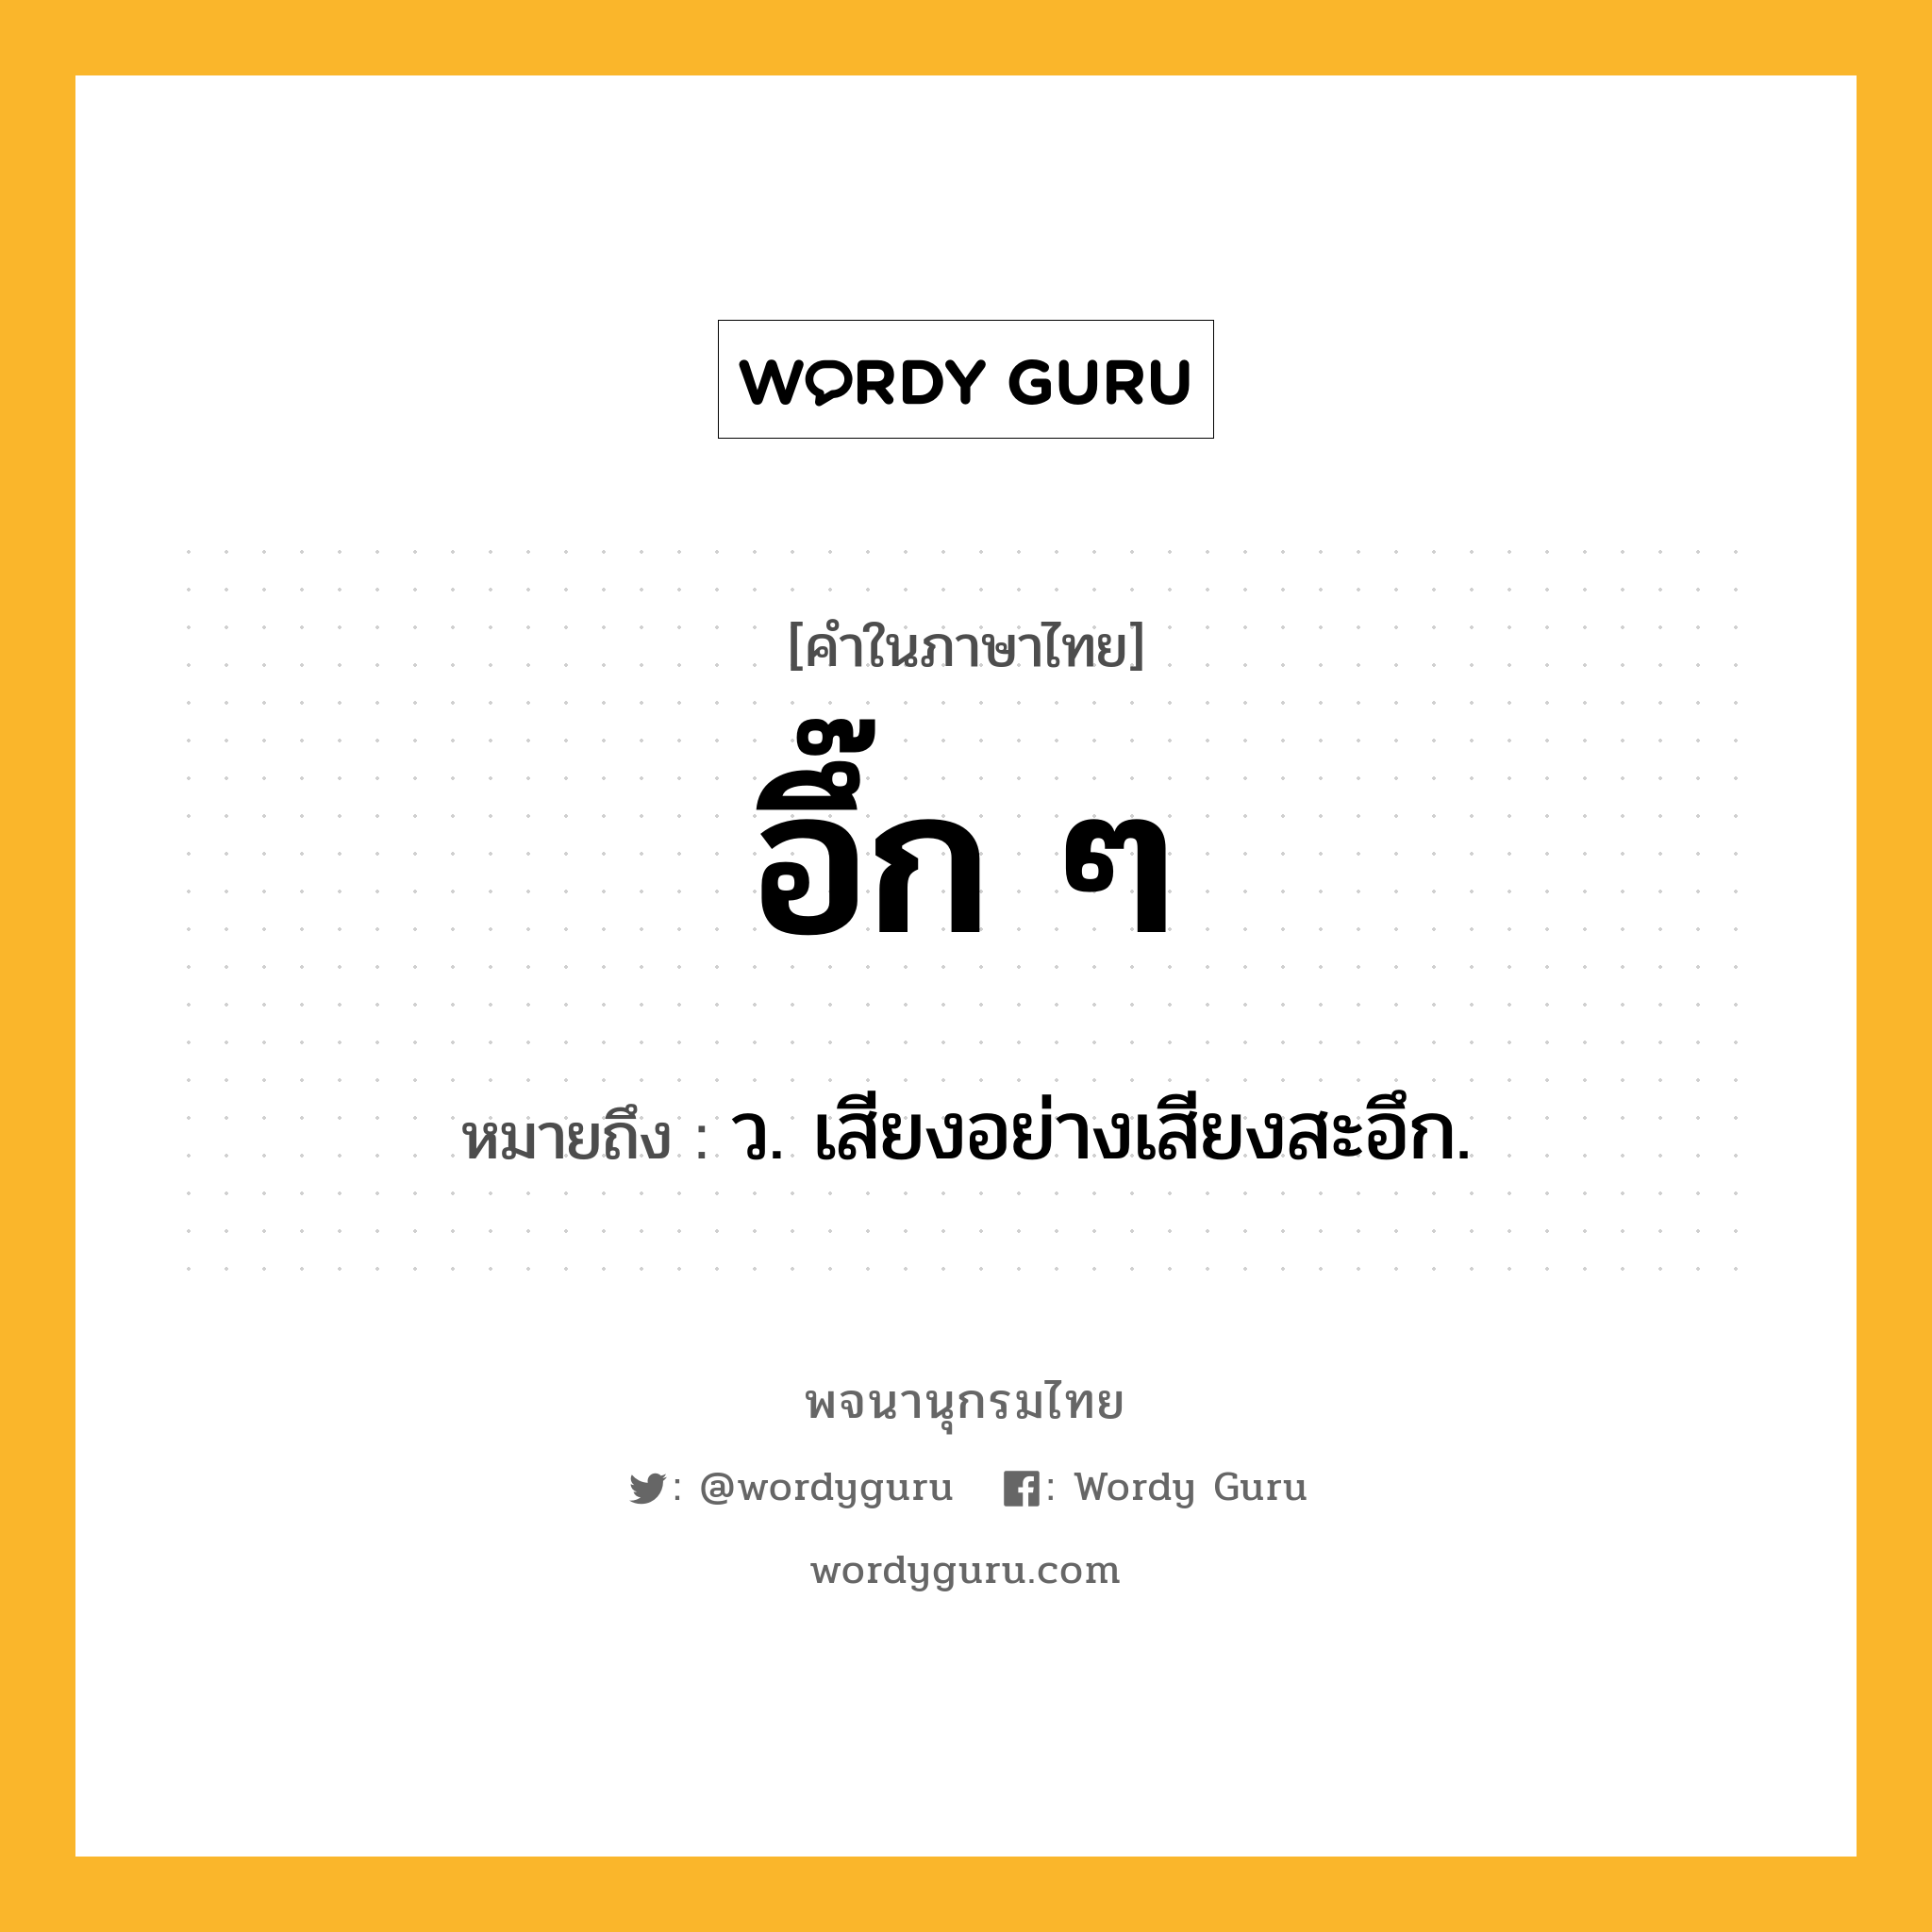 อึ๊ก ๆ ความหมาย หมายถึงอะไร?, คำในภาษาไทย อึ๊ก ๆ หมายถึง ว. เสียงอย่างเสียงสะอึก.